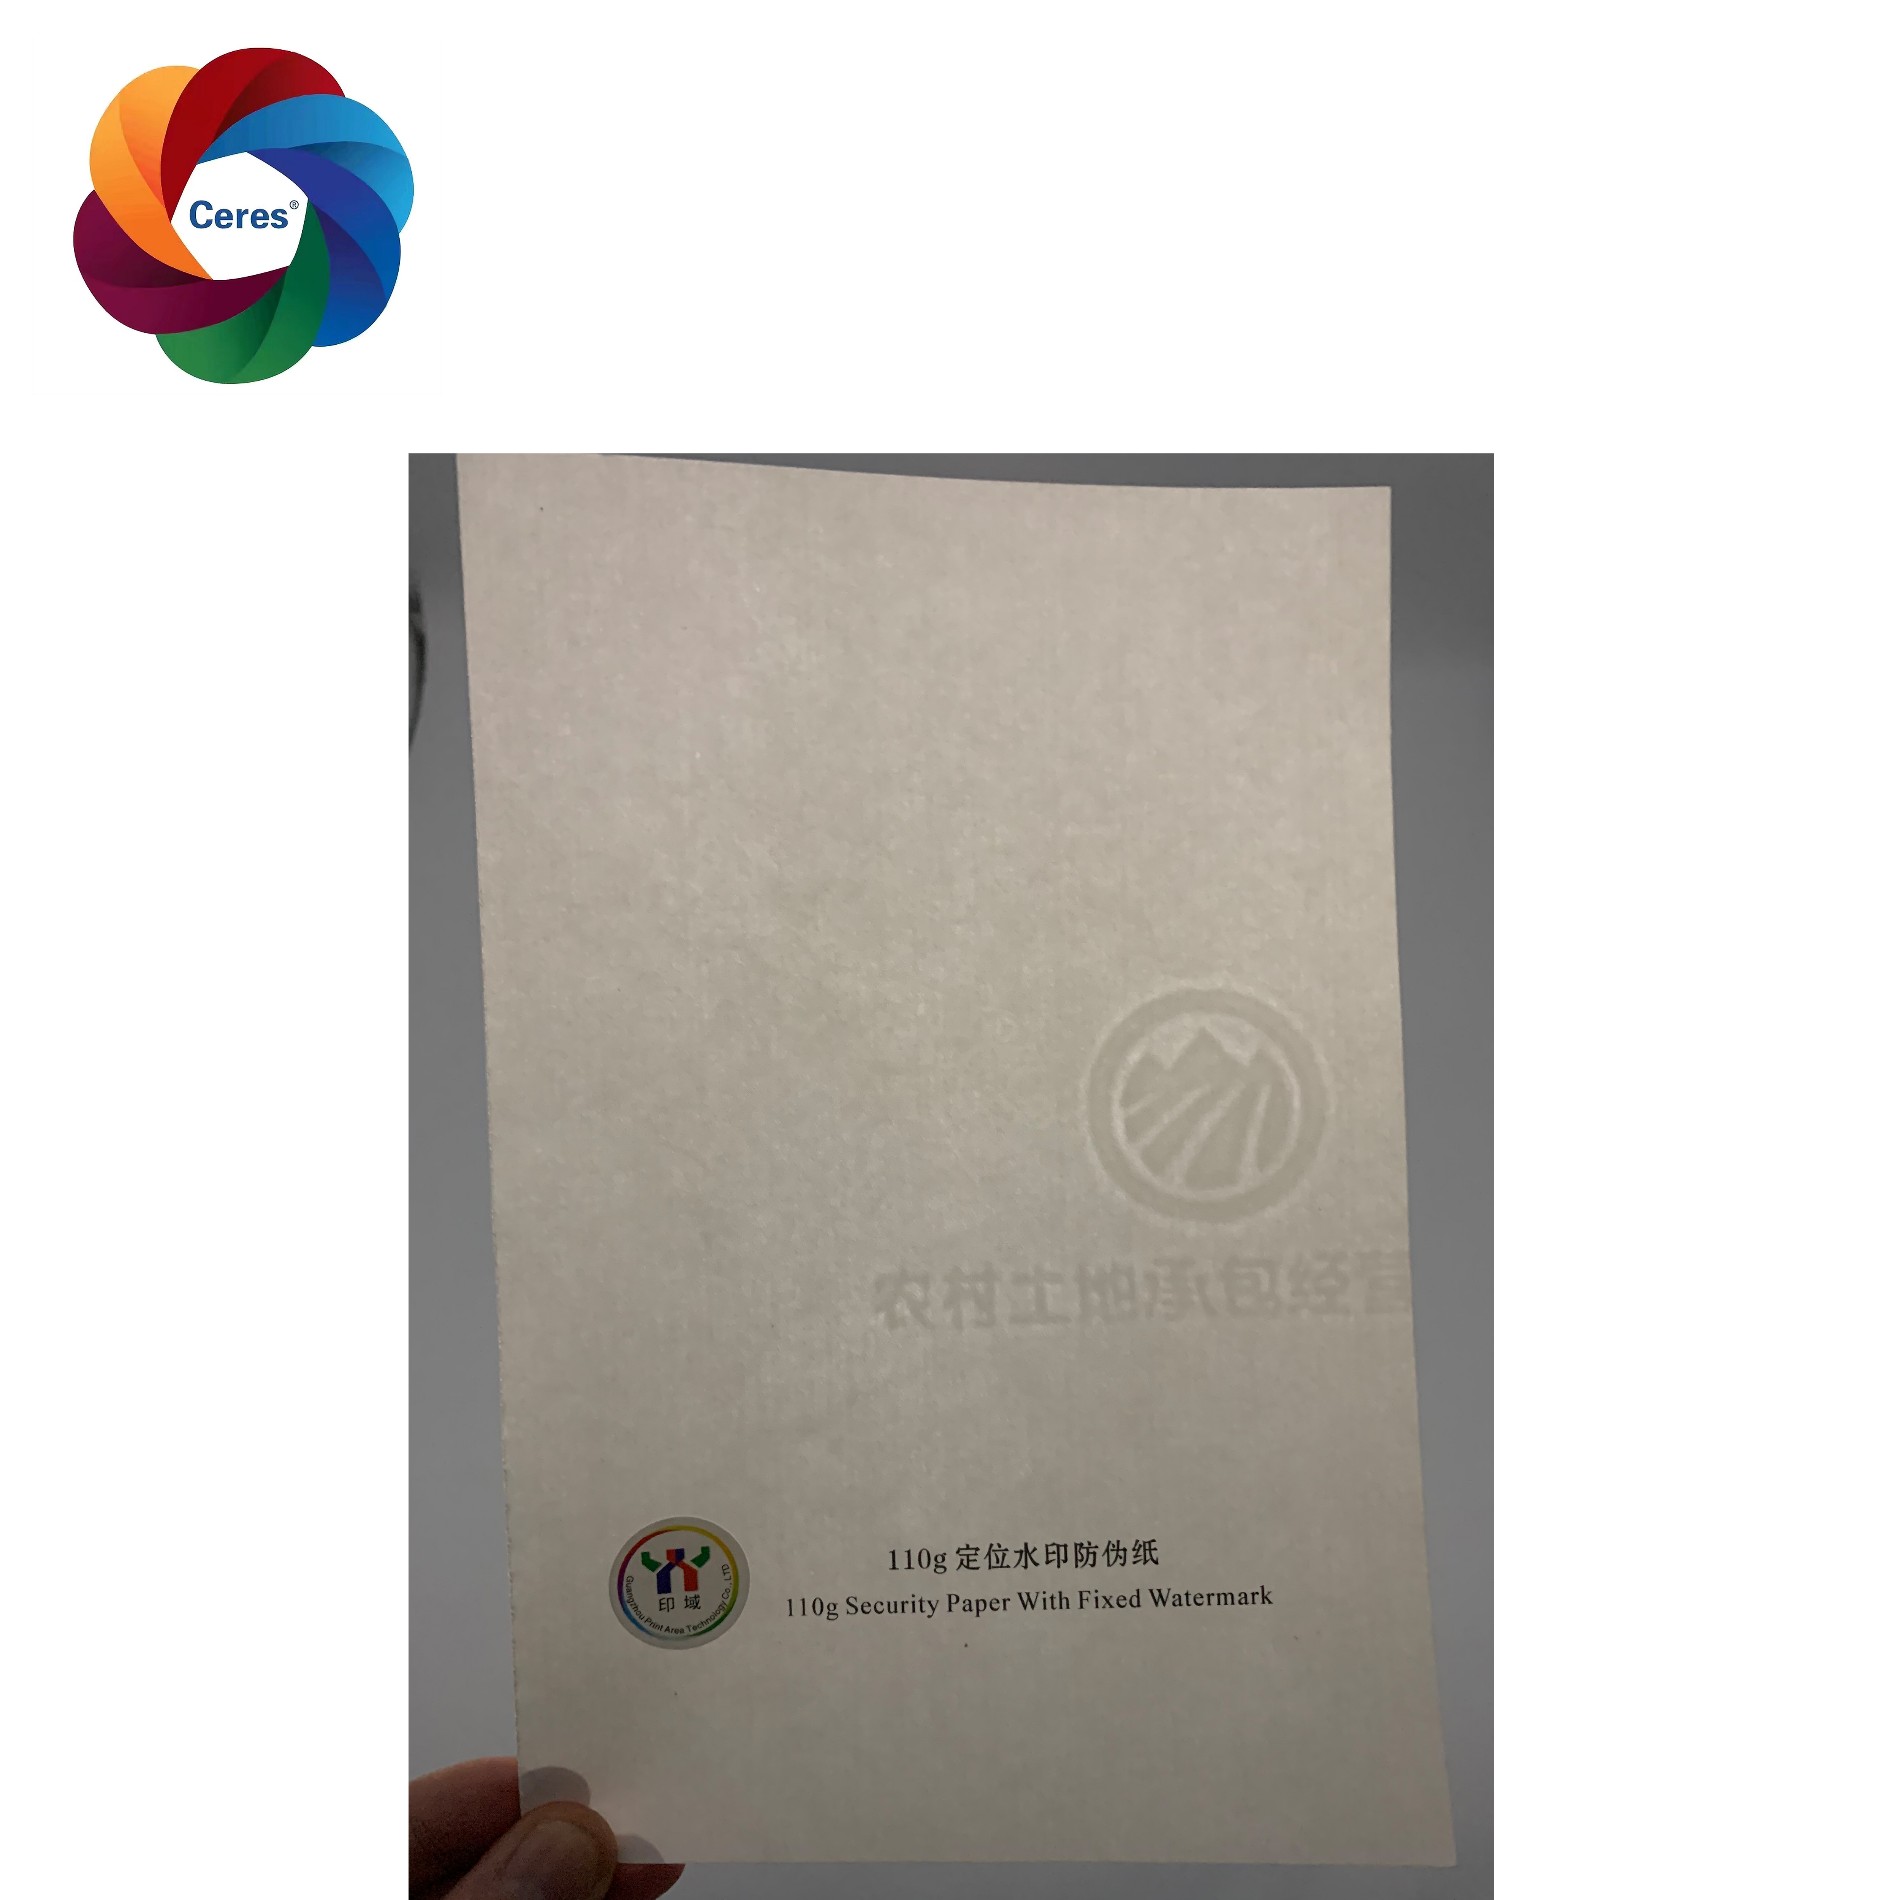 Китай Индивидуальная защитная бумага Цереры с красочным УФ-волокном и линией резьбы, производитель